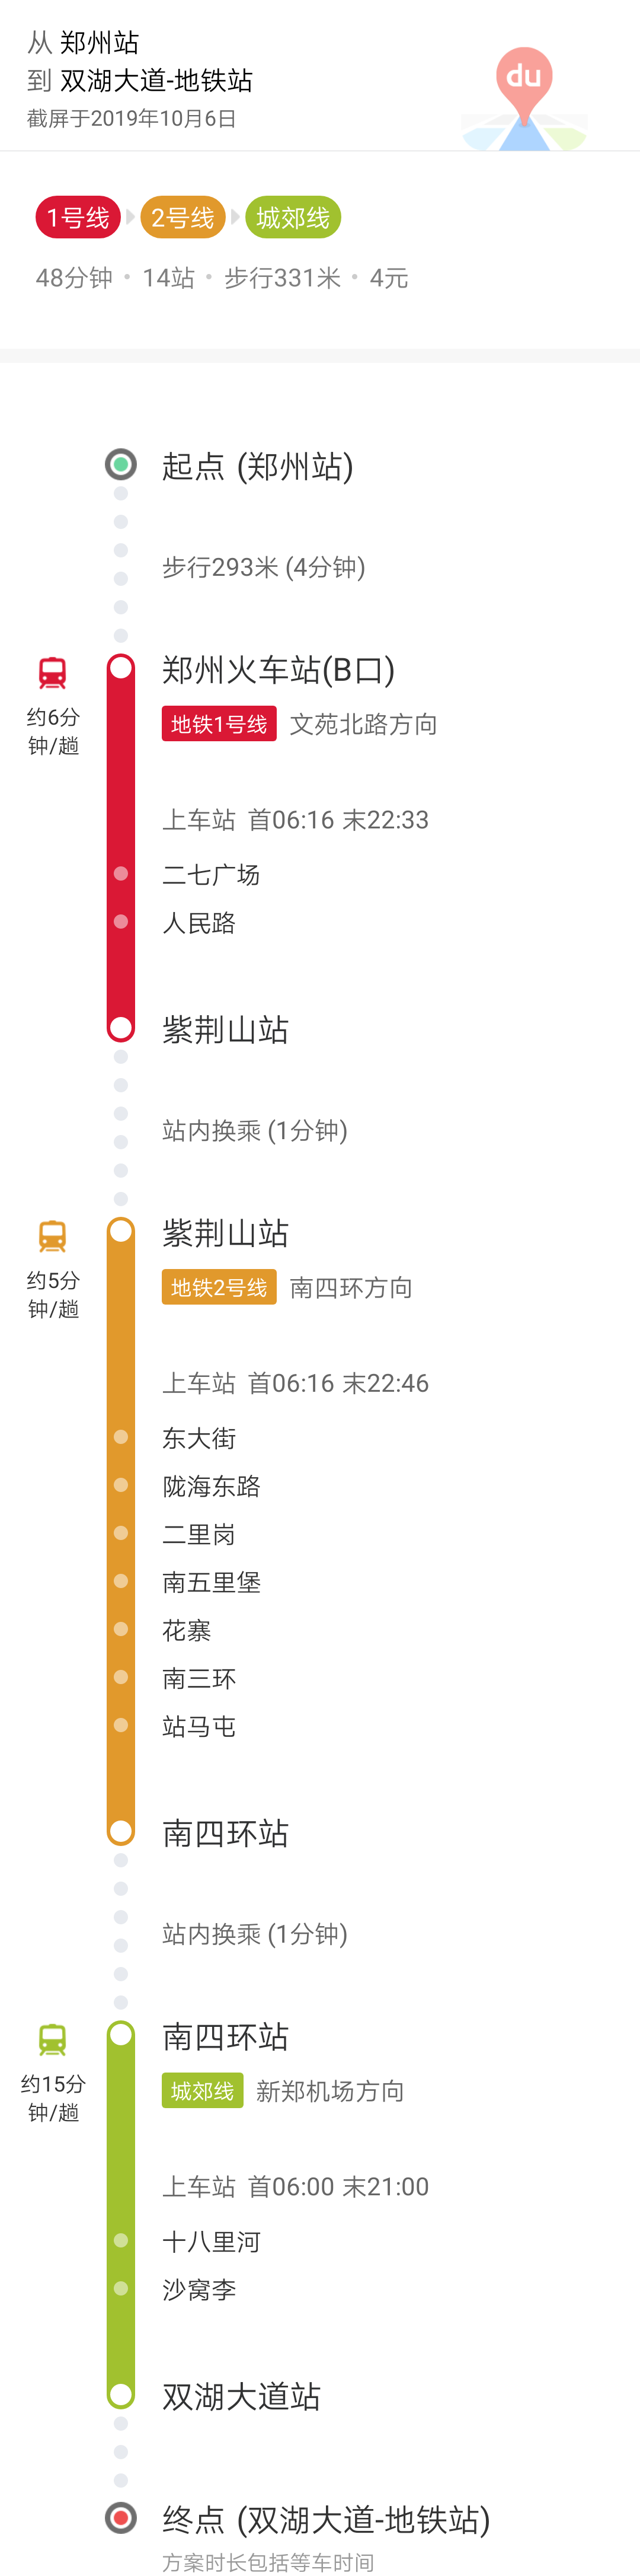 晚上8点郑州火车站到龙湖镇双湖大道还有地铁吗知道的朋友说一下呗谢谢了（郑州火车站坐地铁到龙湖镇）